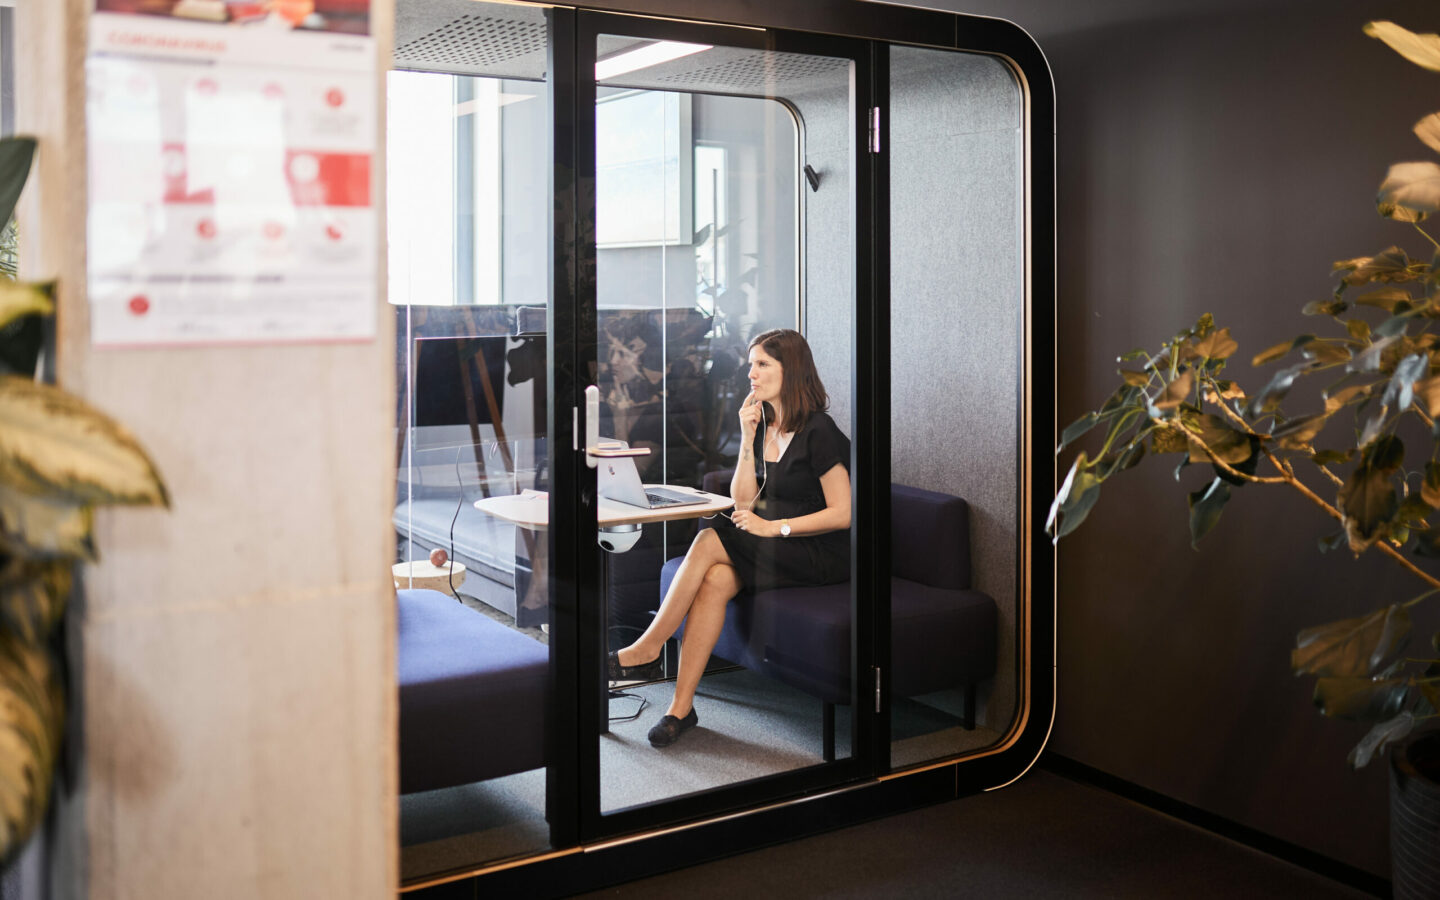 Foto von einer valantic-CX-Angestellten, die in einer Büro-Telefonzelle ein Telefonat über Customer Experience führt.